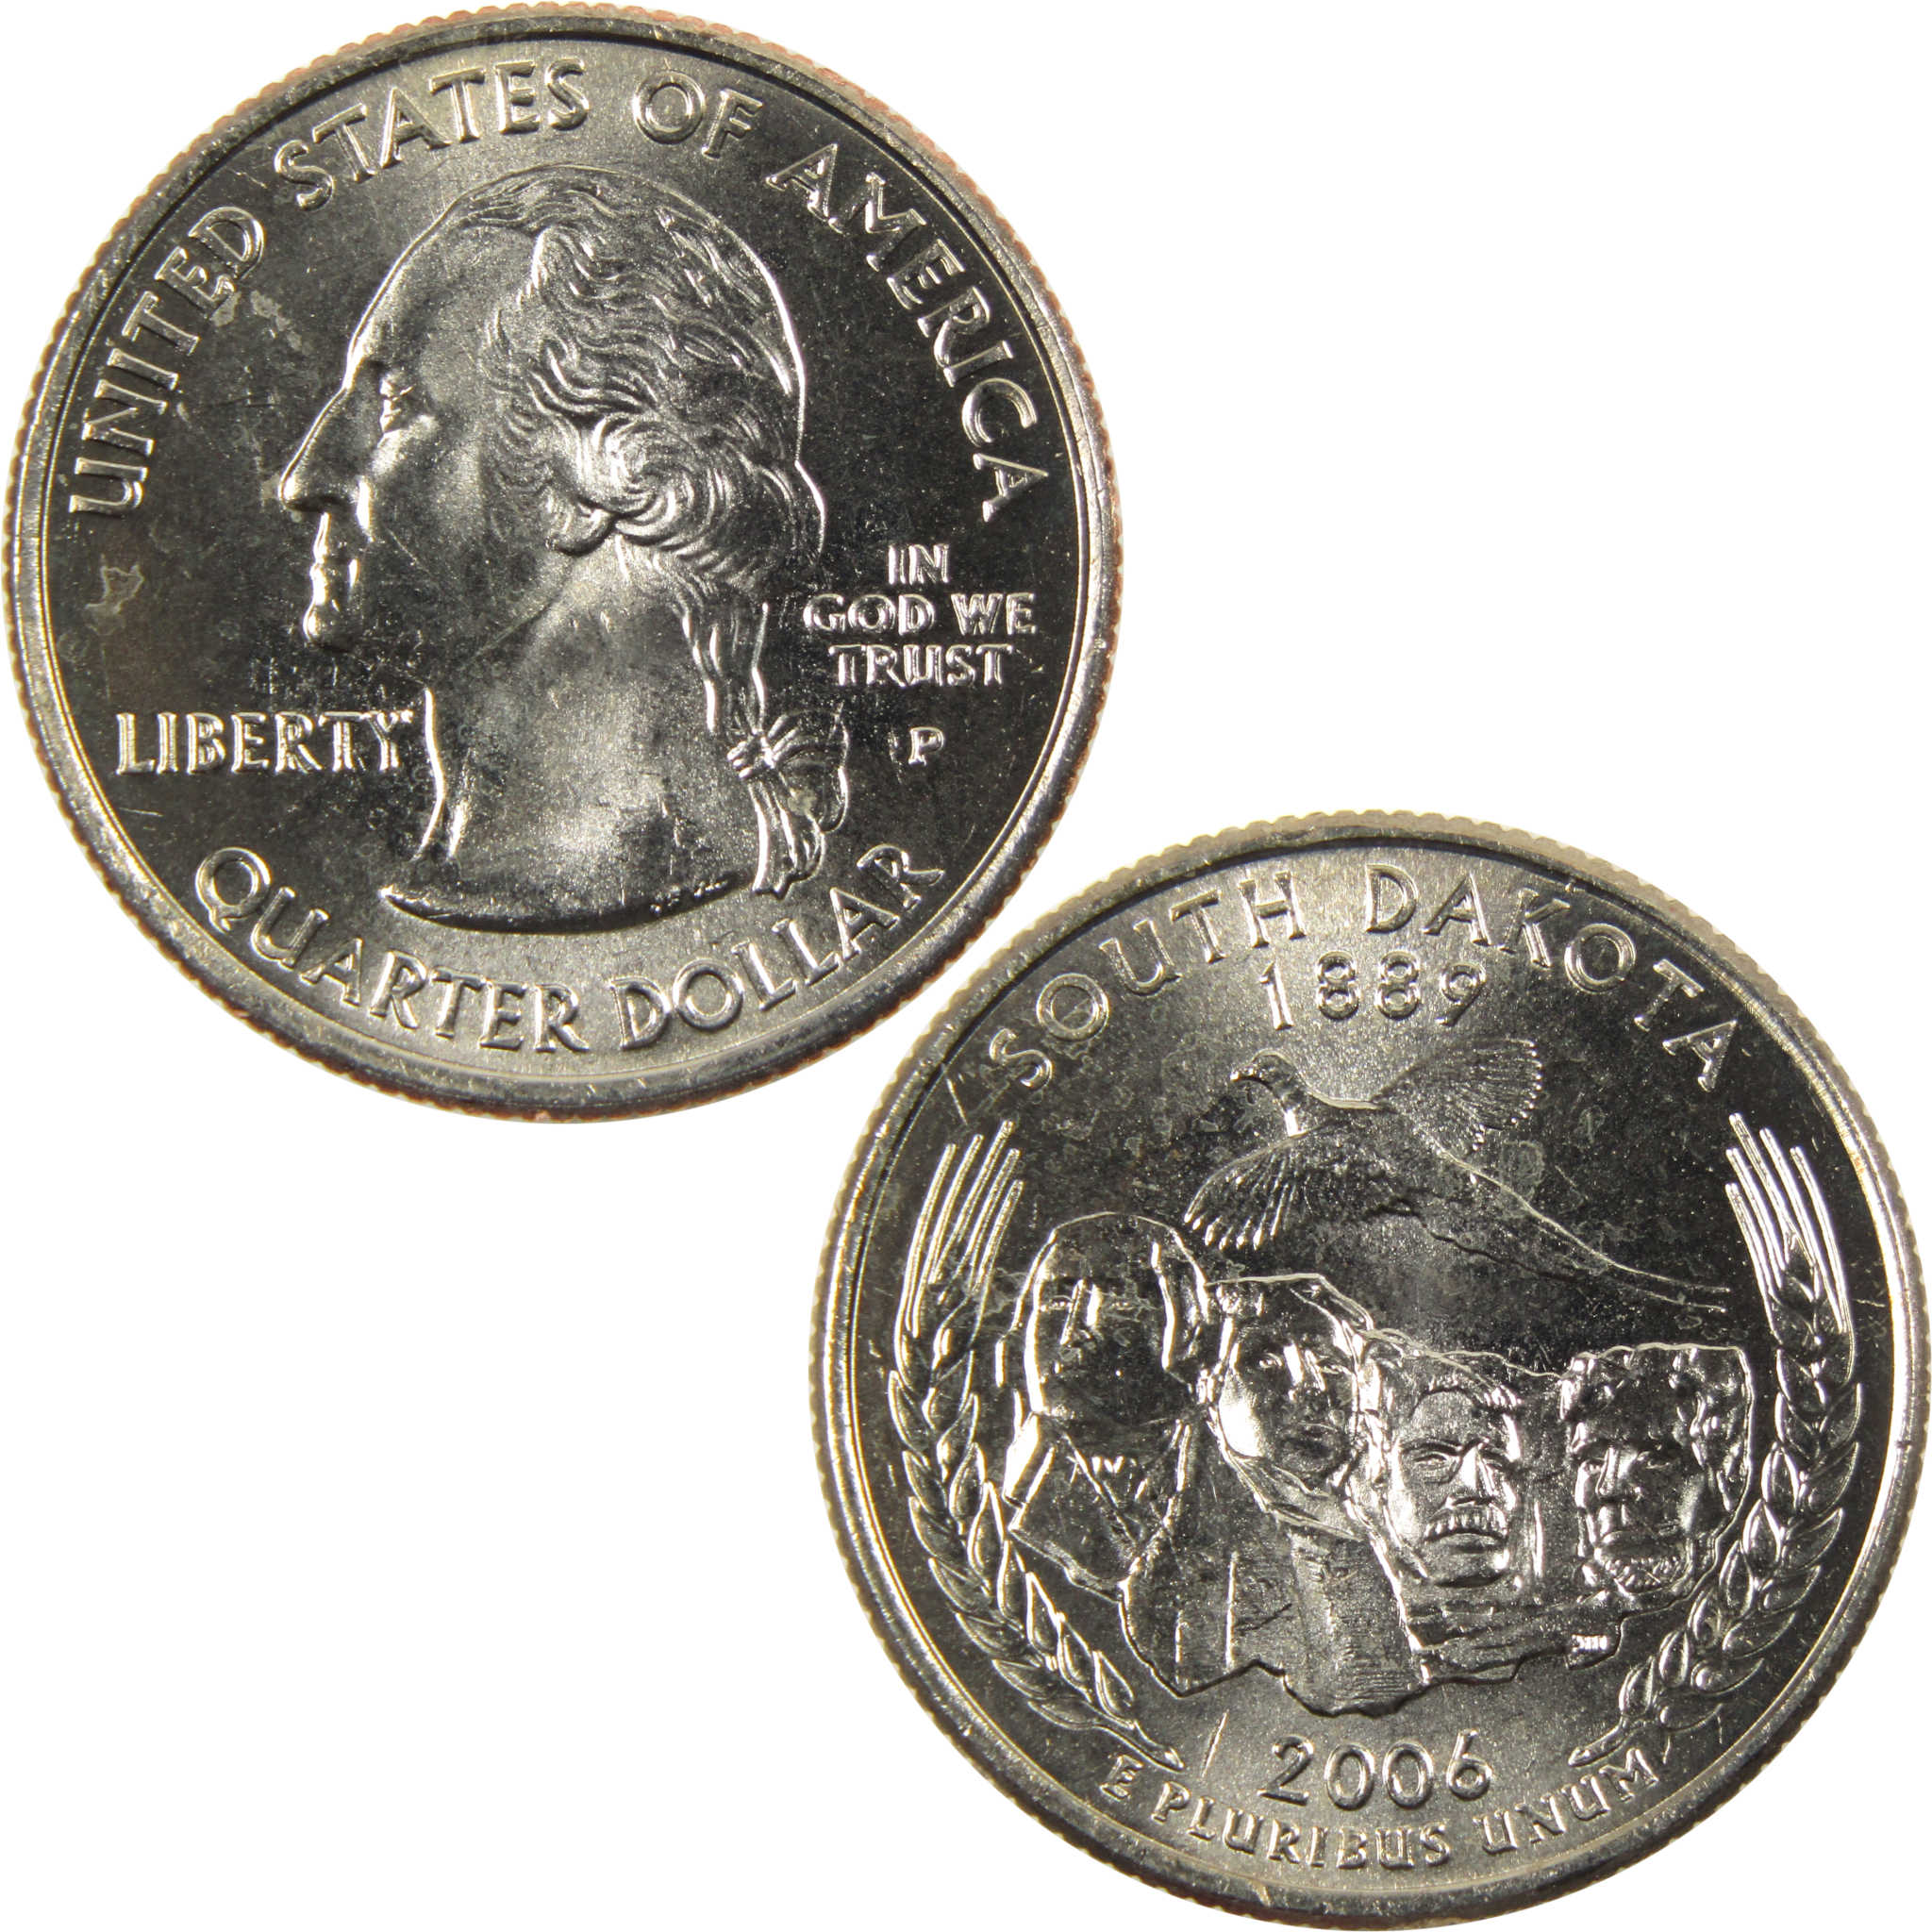 2006 P South Dakota State Quarter BU Uncirculated Clad 25c Coin